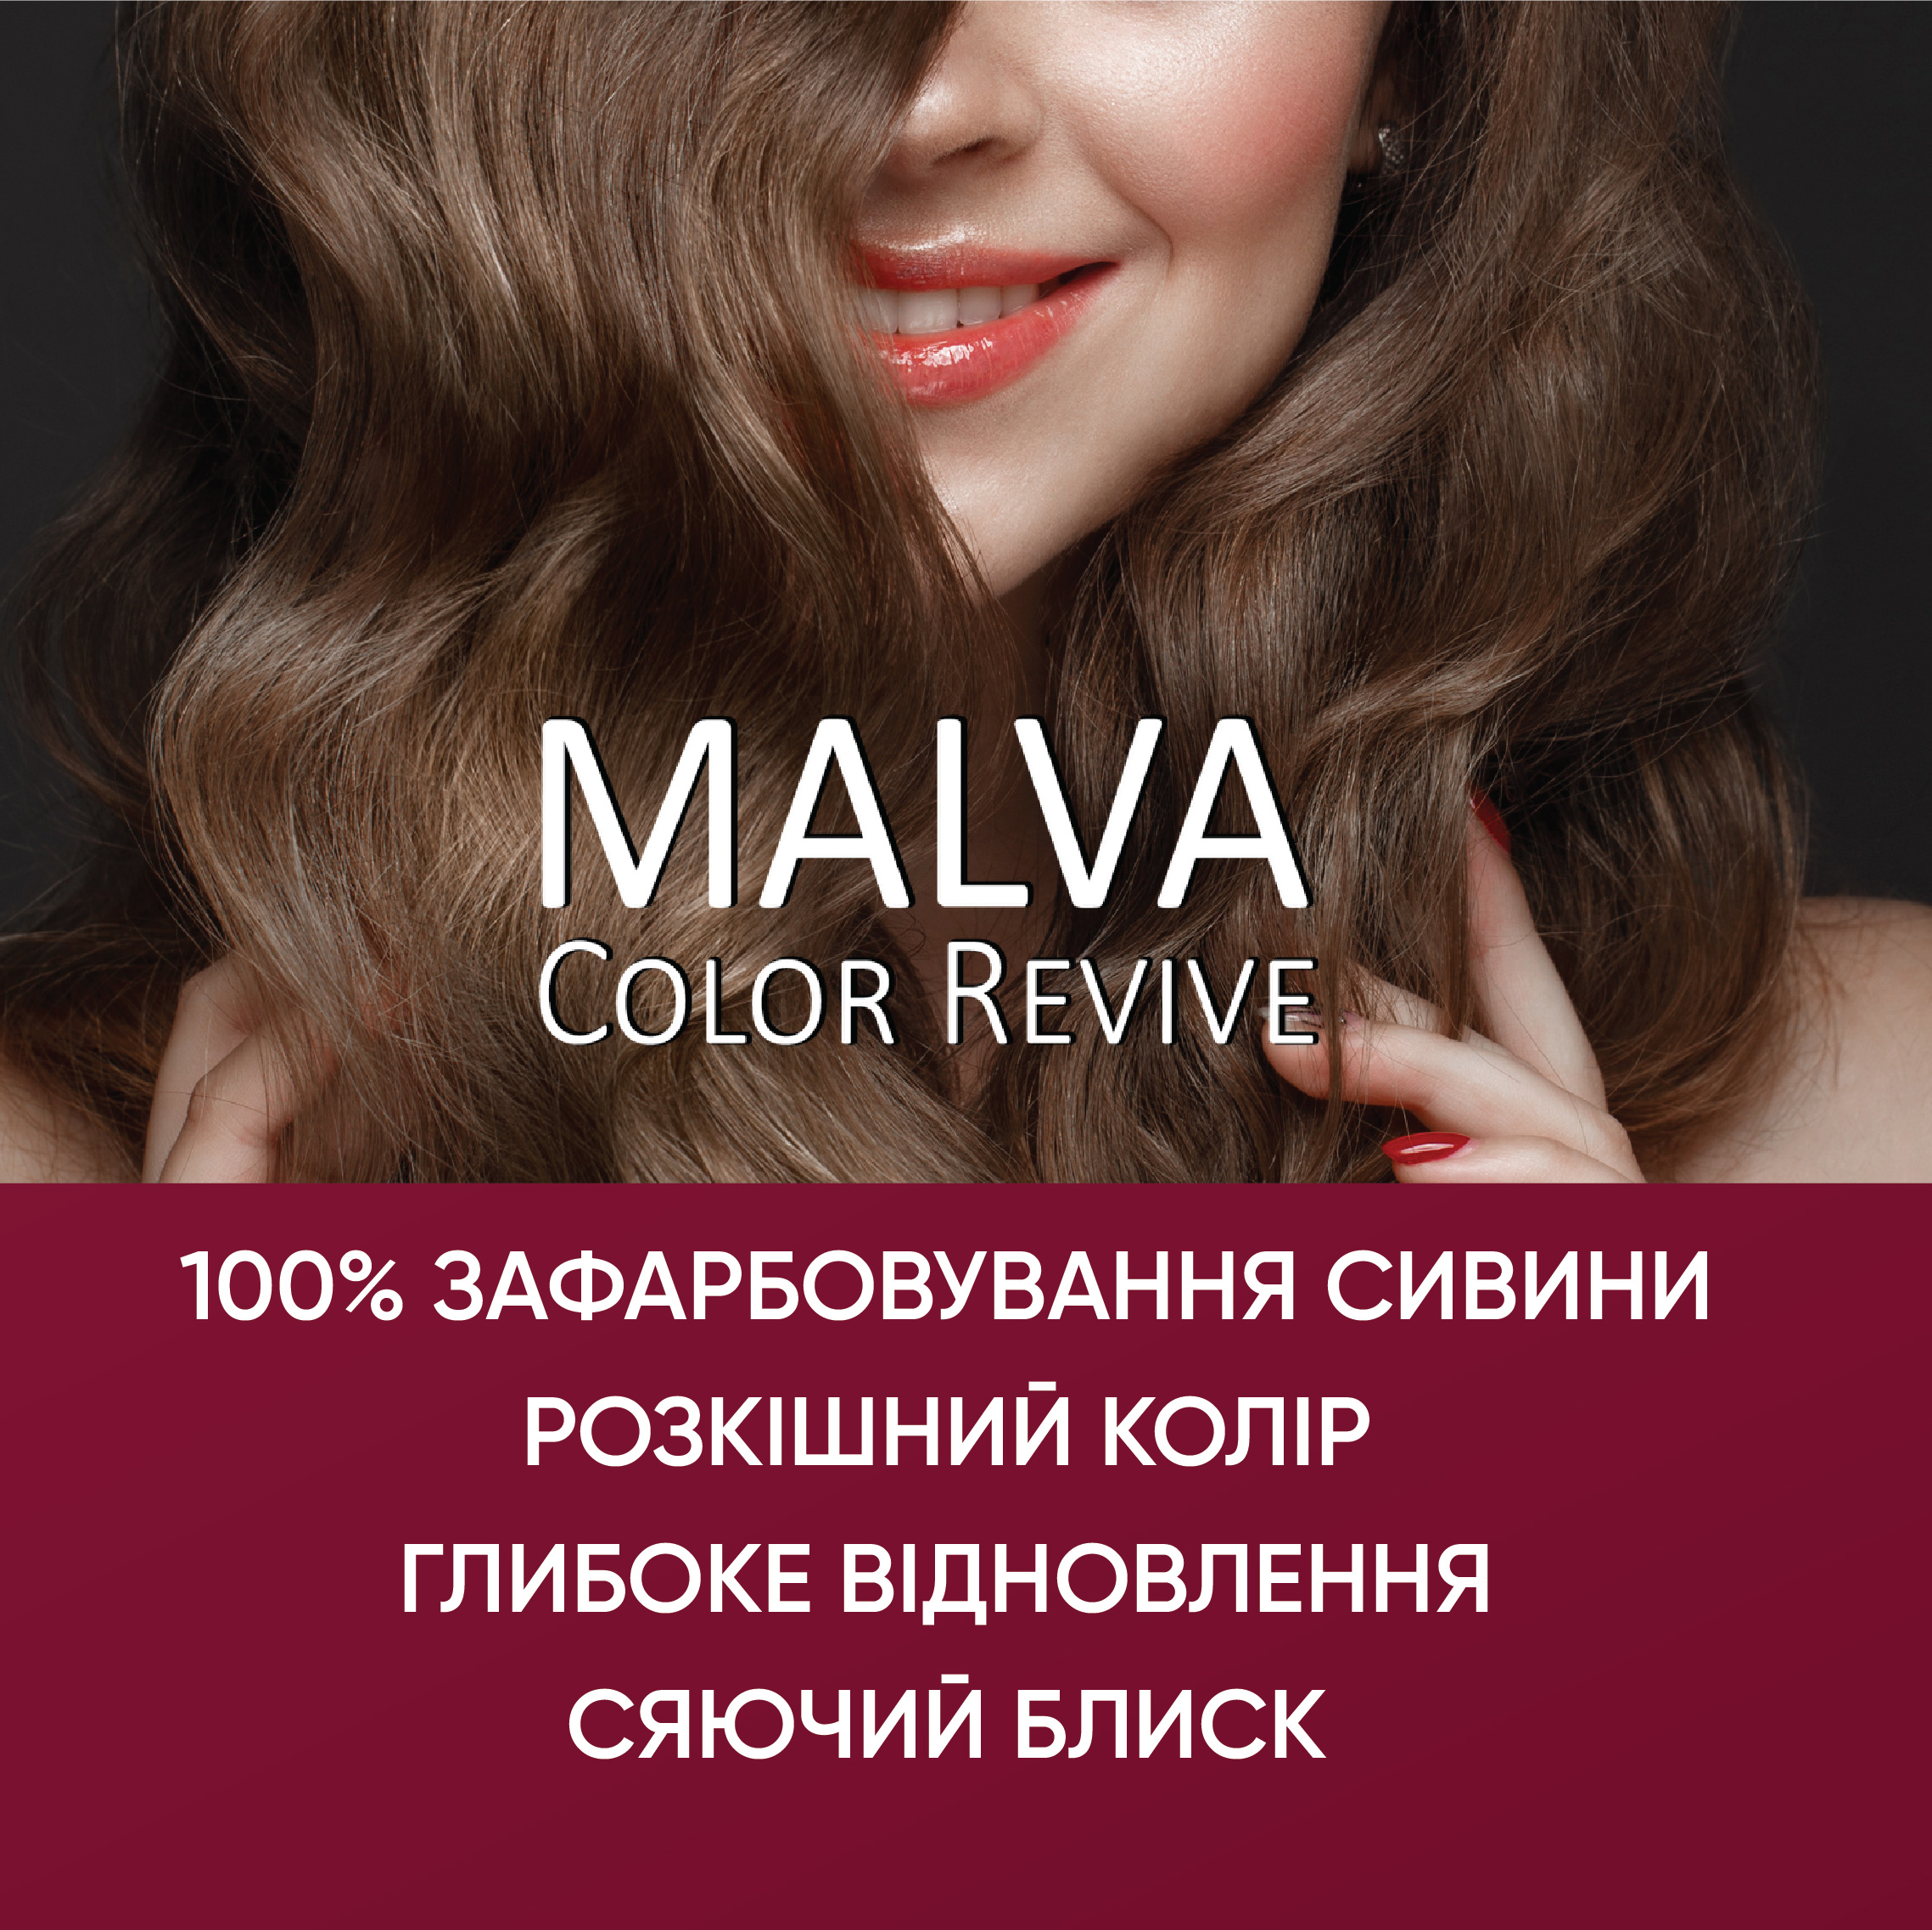 Устойчивая крем-краска для волос Malva Color Revive оттенок 112 Бежевый блонд - фото 5